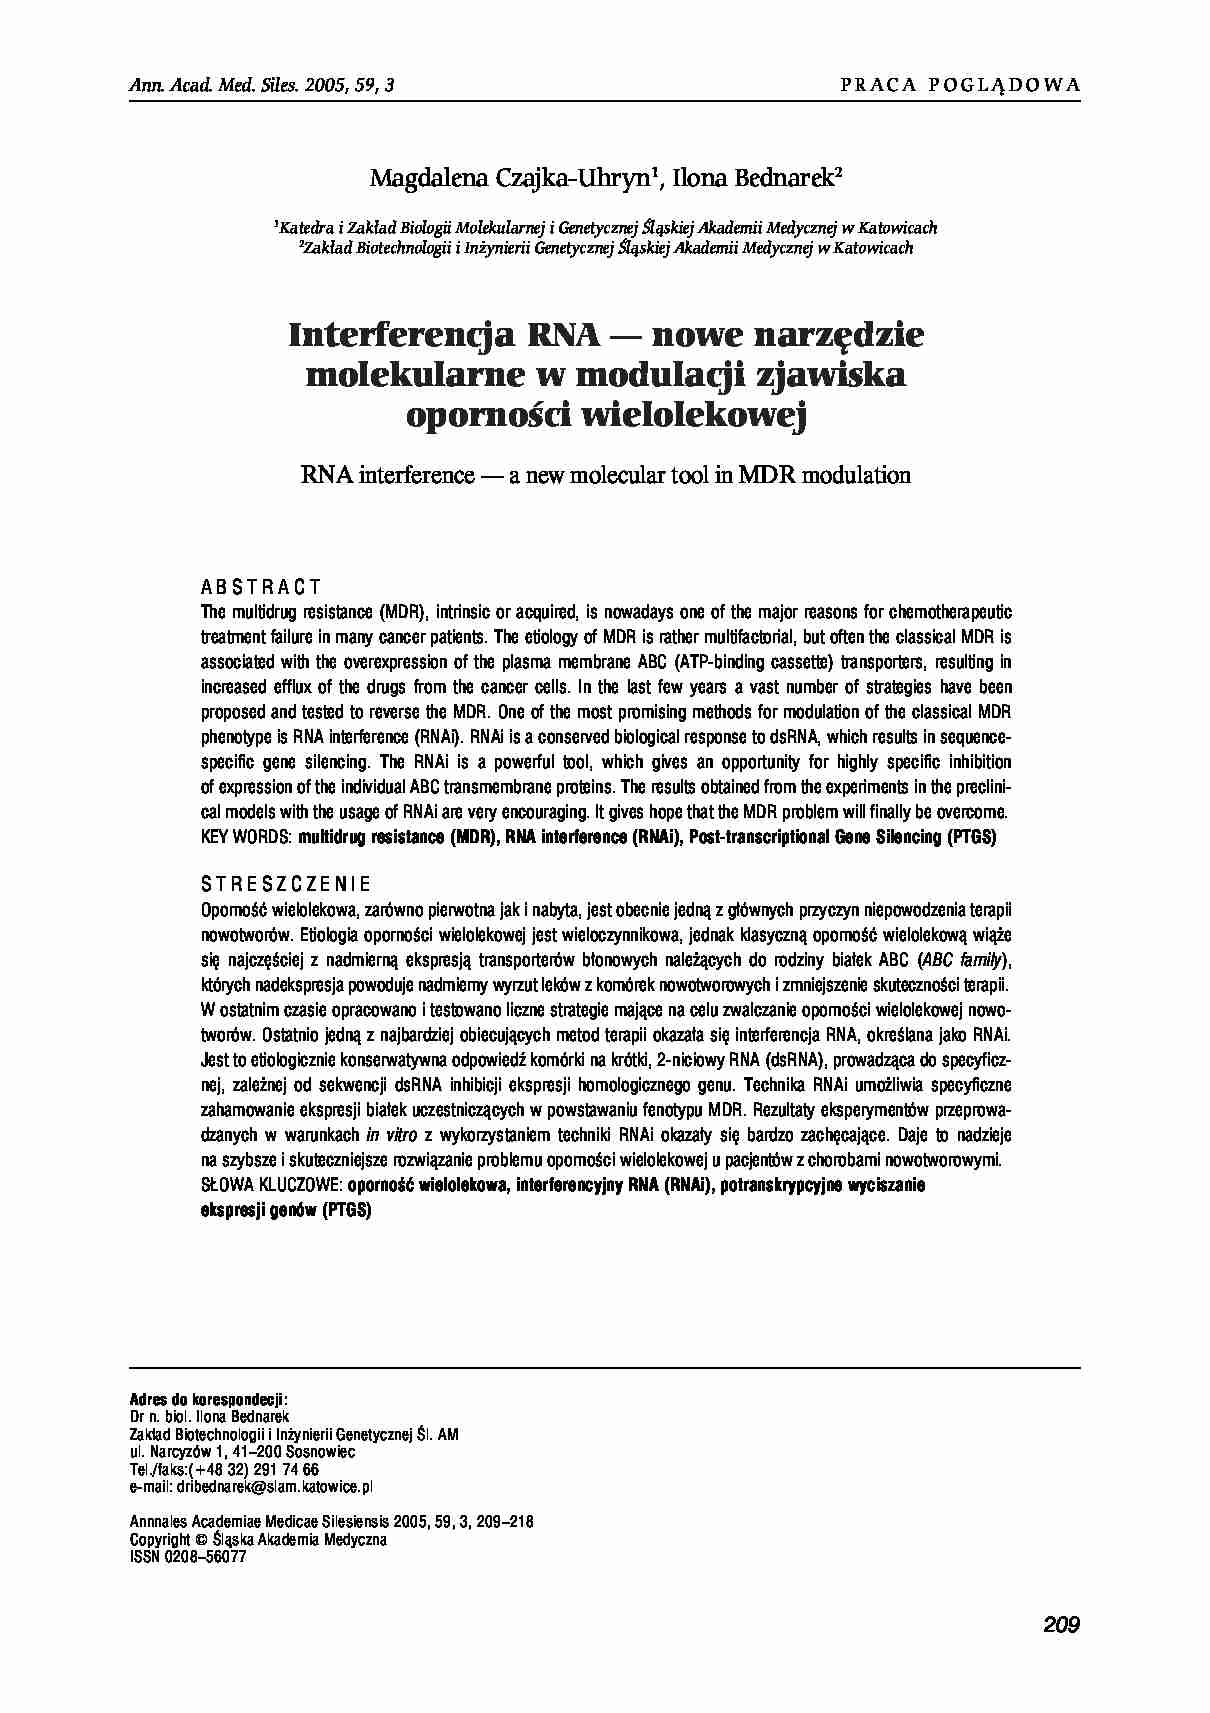 Interferencja RNA- opracowanie - strona 1